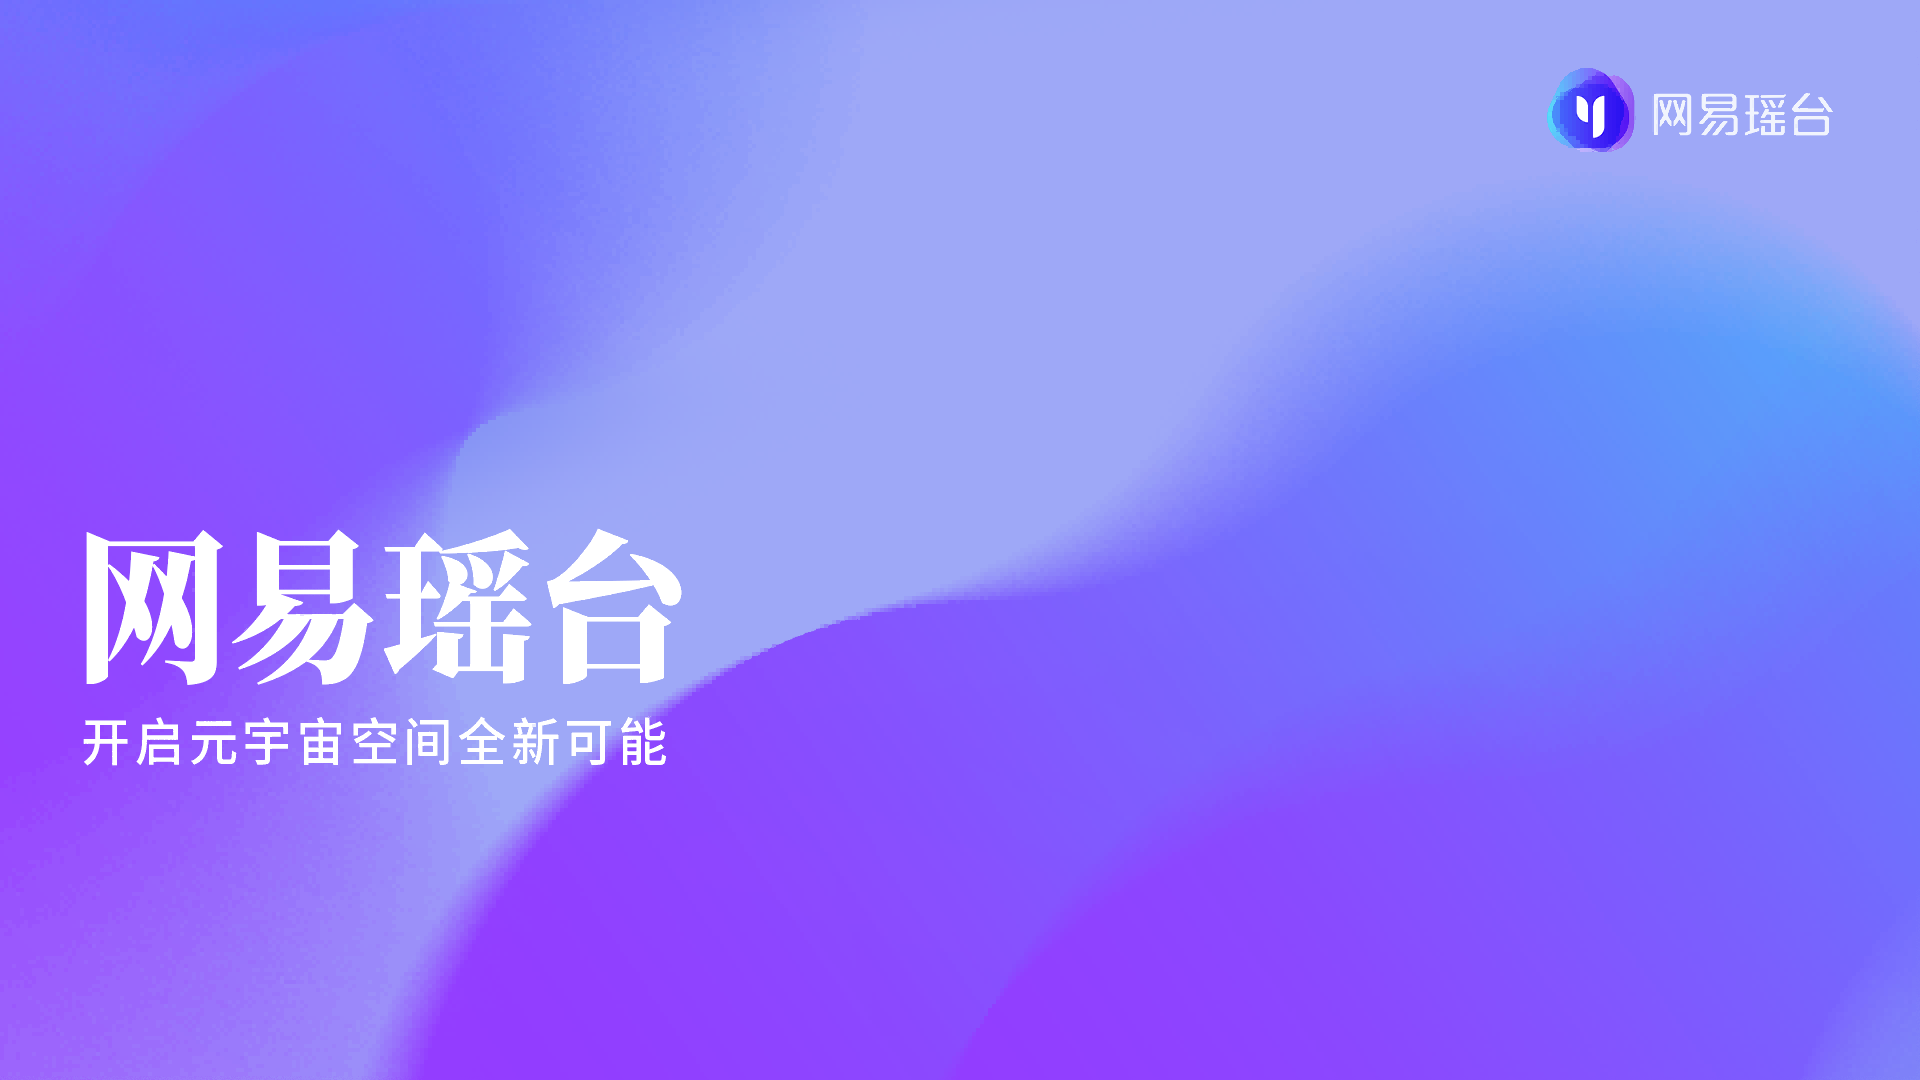 这是一张带有文字的图形设计图片，背景为渐变的紫蓝色调，中间有白色简体中文字体，右上角有一个图标。